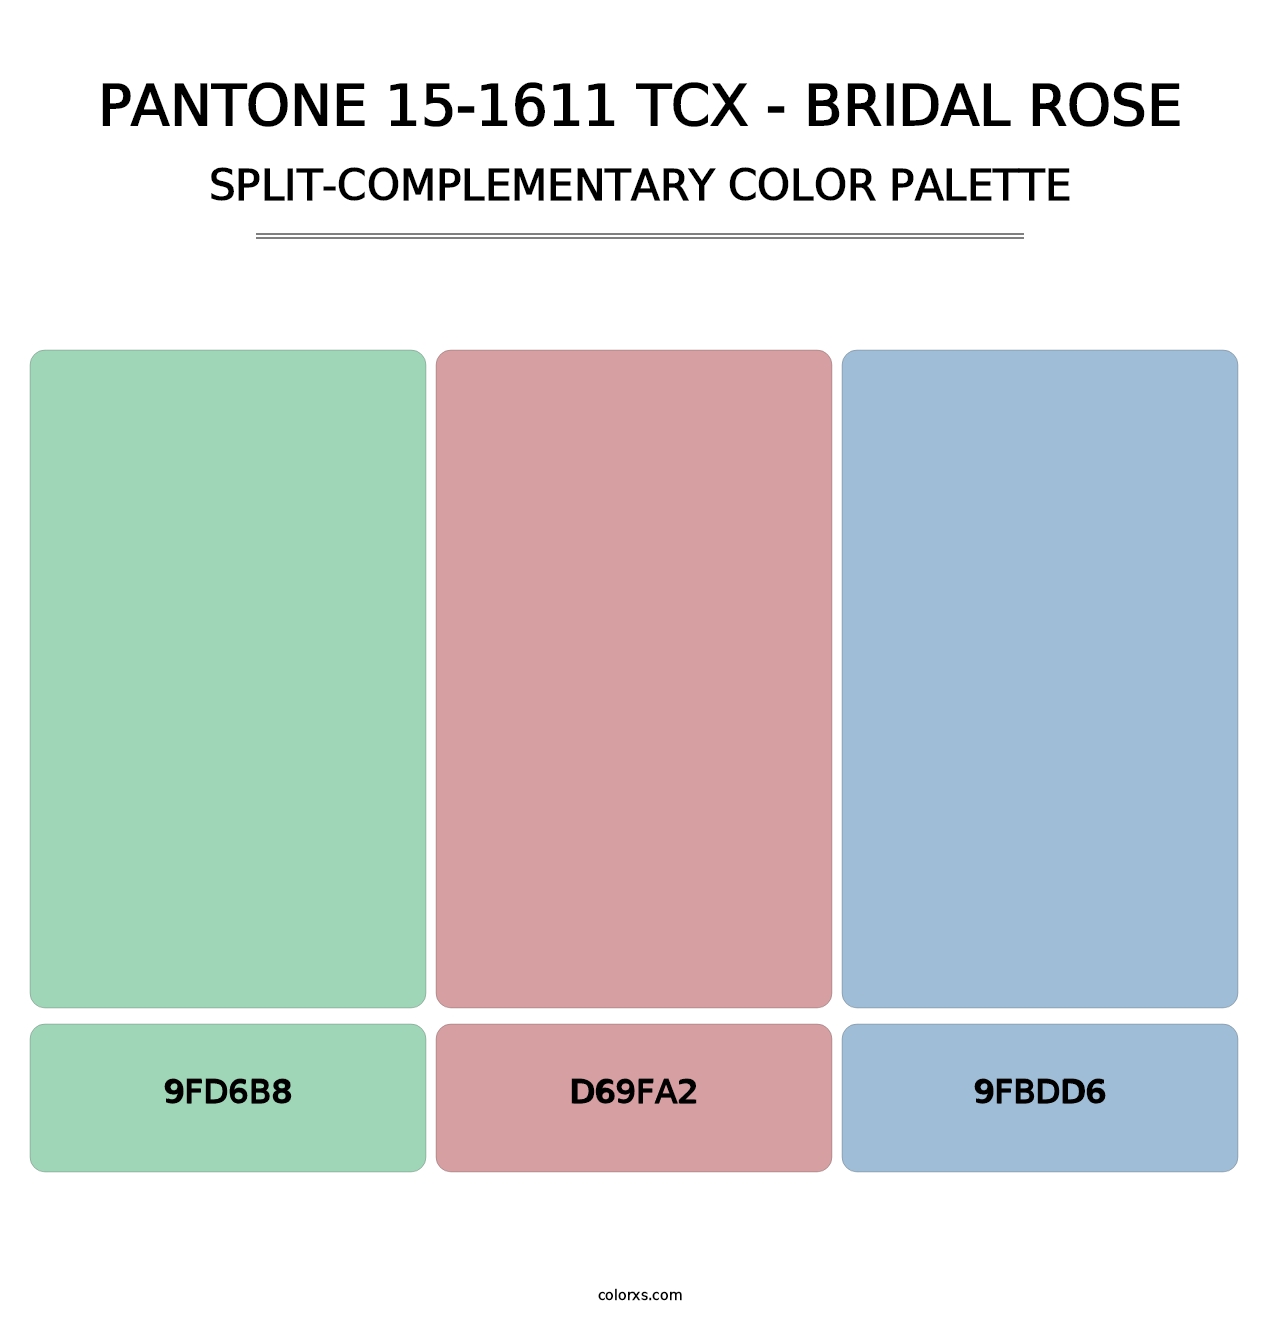 PANTONE 15-1611 TCX - Bridal Rose - Split-Complementary Color Palette